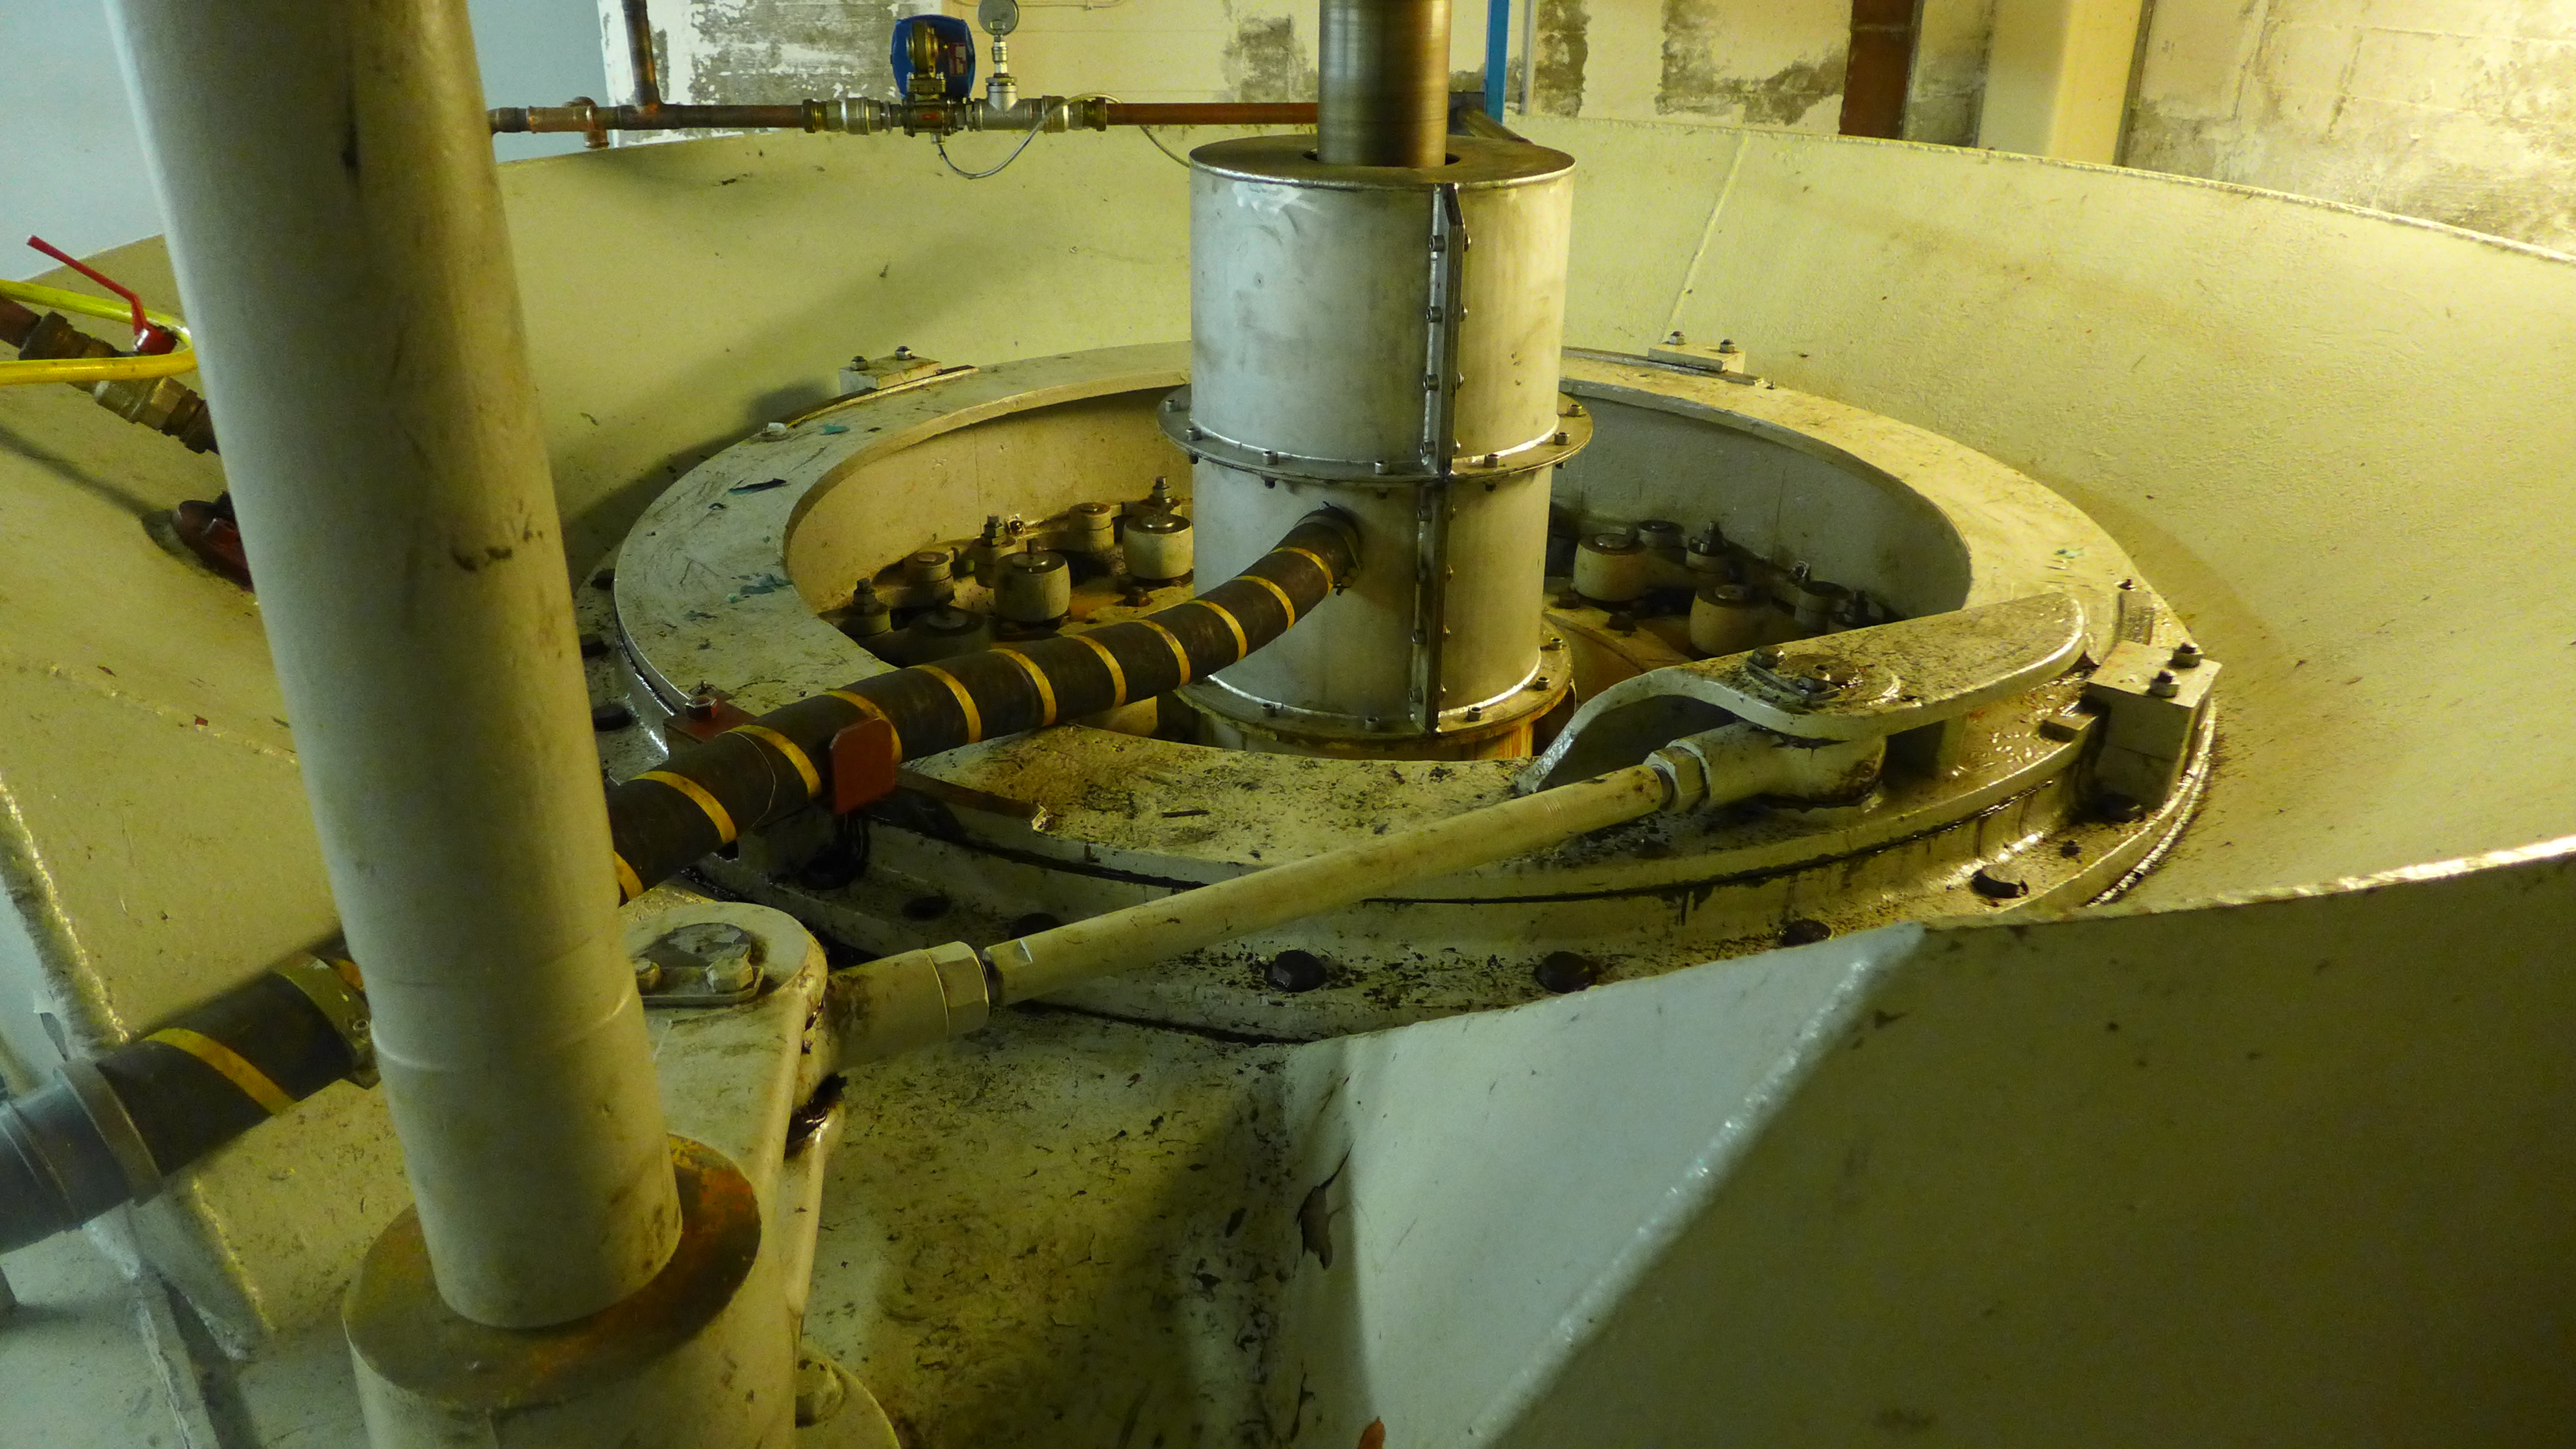 Kollerö kraftverk har en kaplanturbin, tillverkad 1937 av Nohab – Nydqvist & Holm AB – i Trollhättan. Den ursprungliga turbinregulatorn finns inte kvar - regleringen sker istället med modern utrustning installerad 2002.
